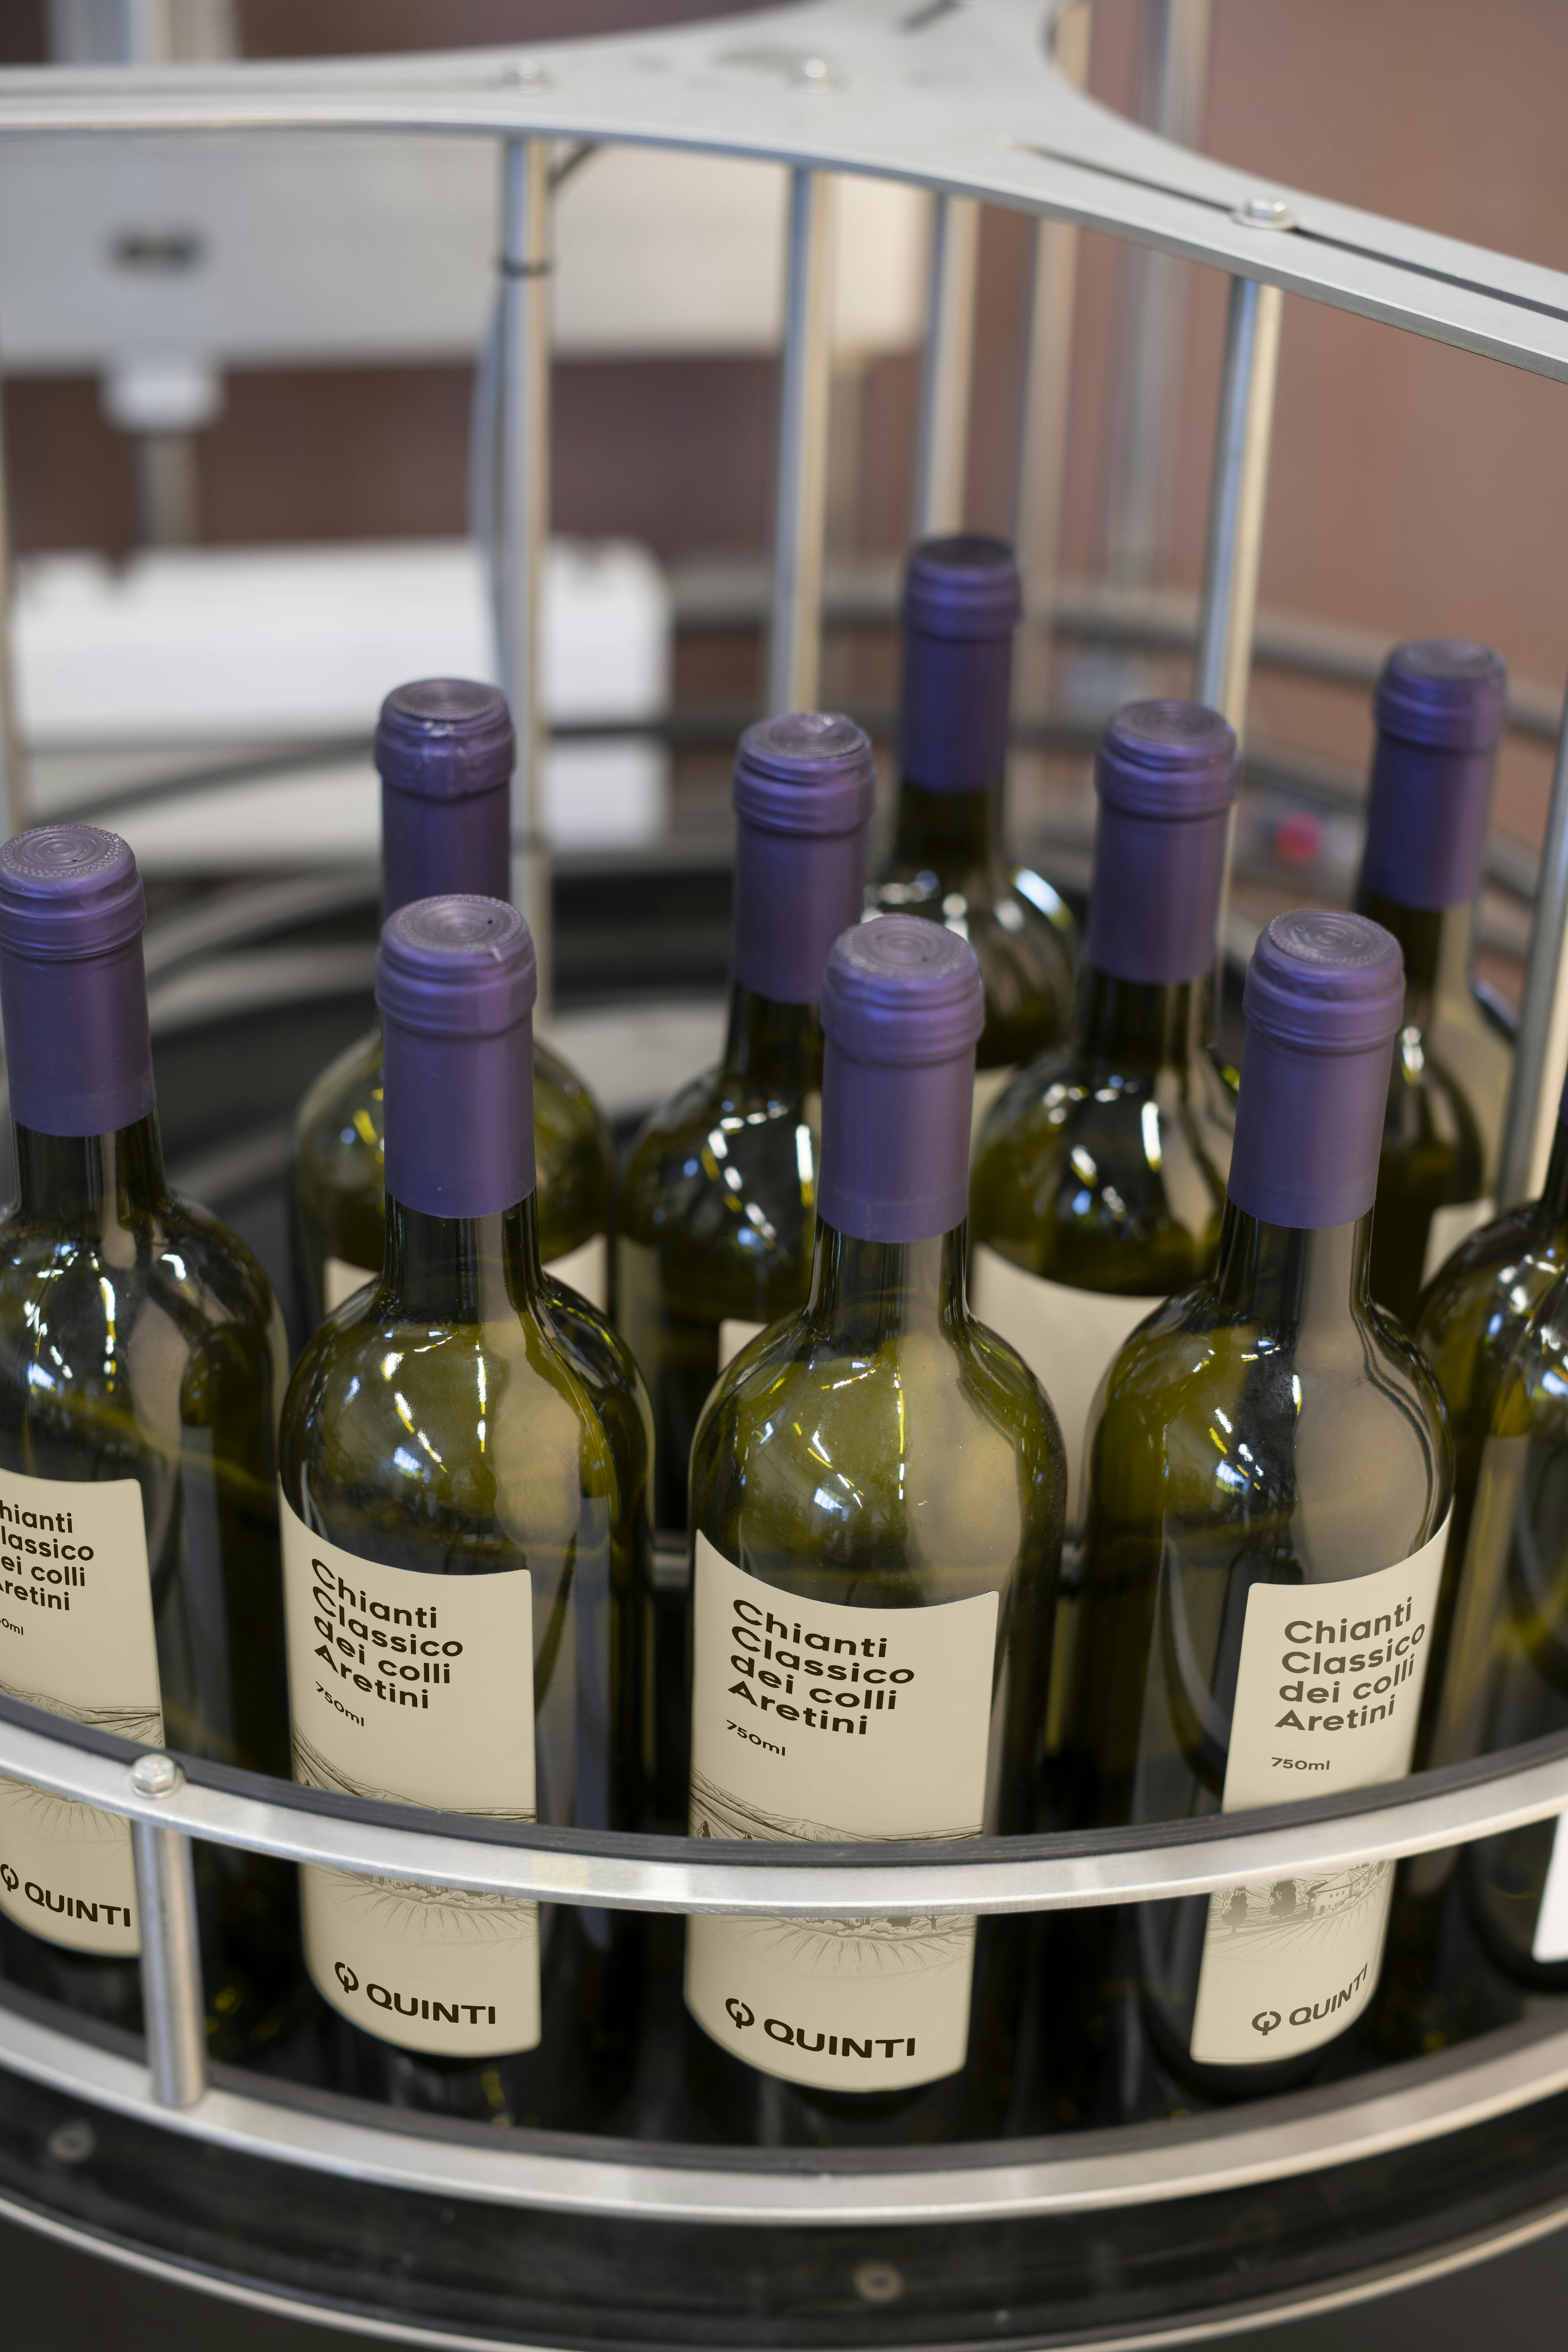 Una tavola indicata per l'accumulo di bottiglie, in questo caso vi sono collocate delle bottiglie di vino con capsula viola ed etichetta personalizzata Quinti